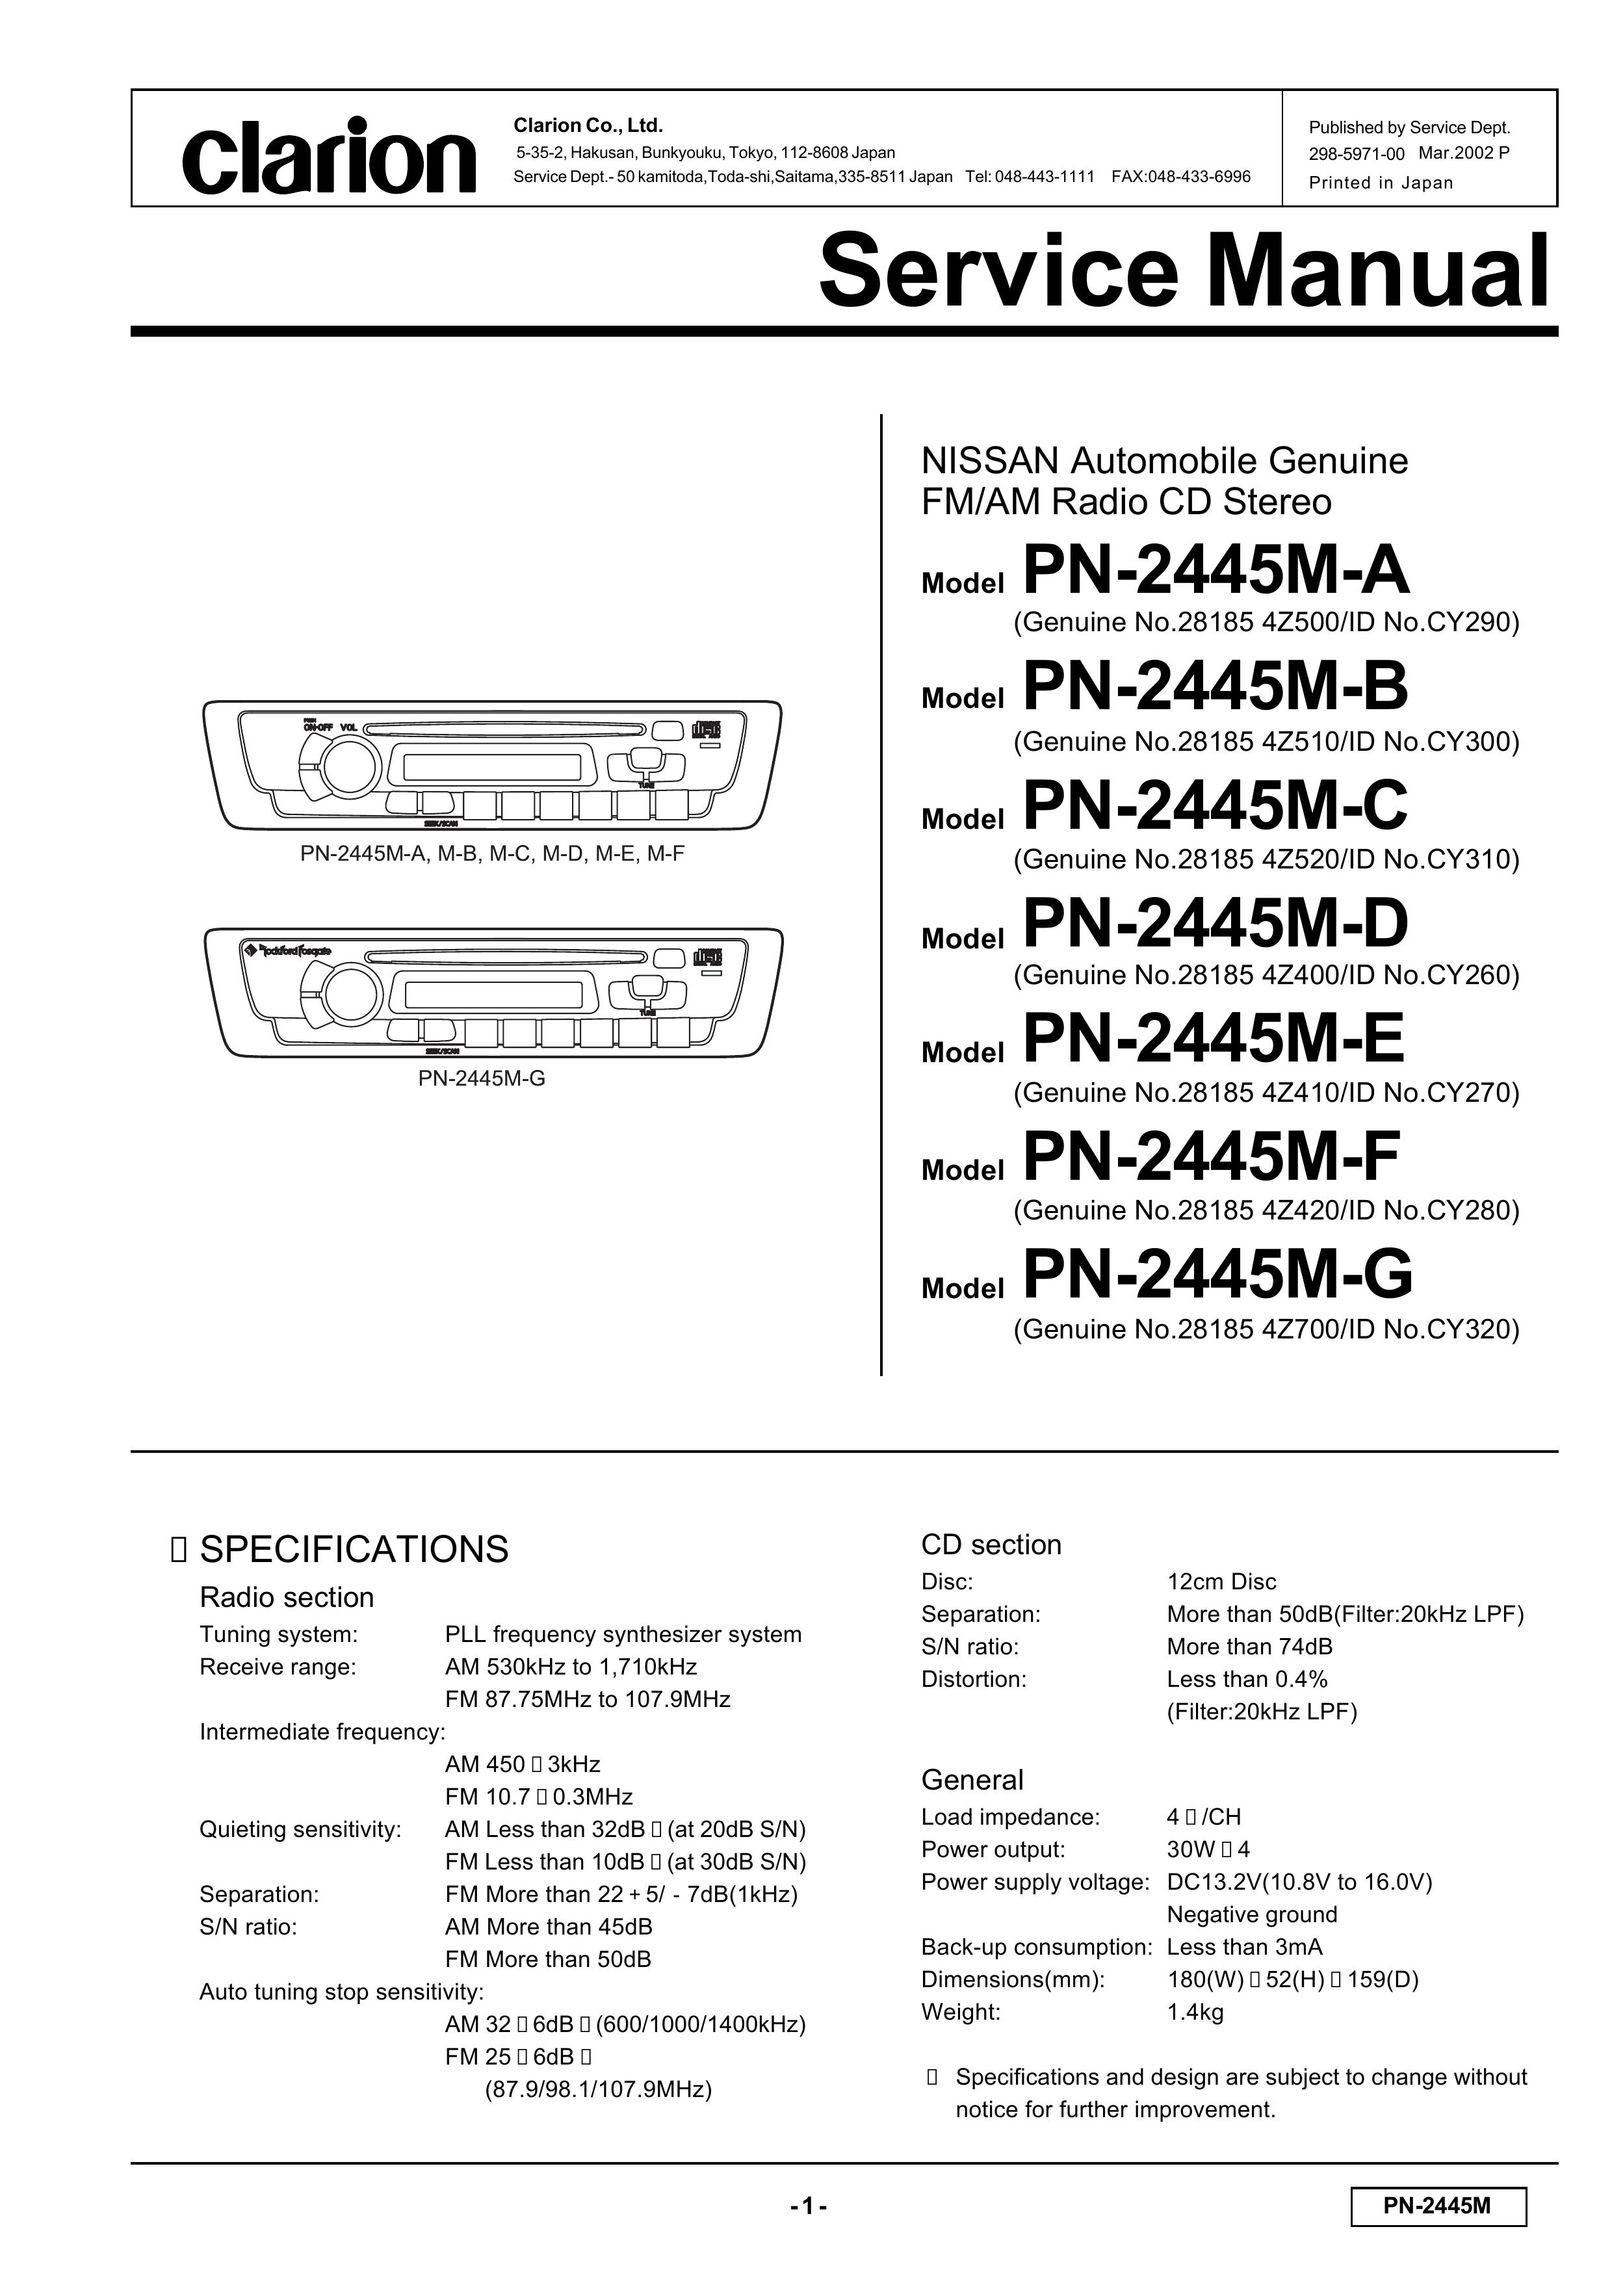 Clarion PN-2445M-D Radio User Manual